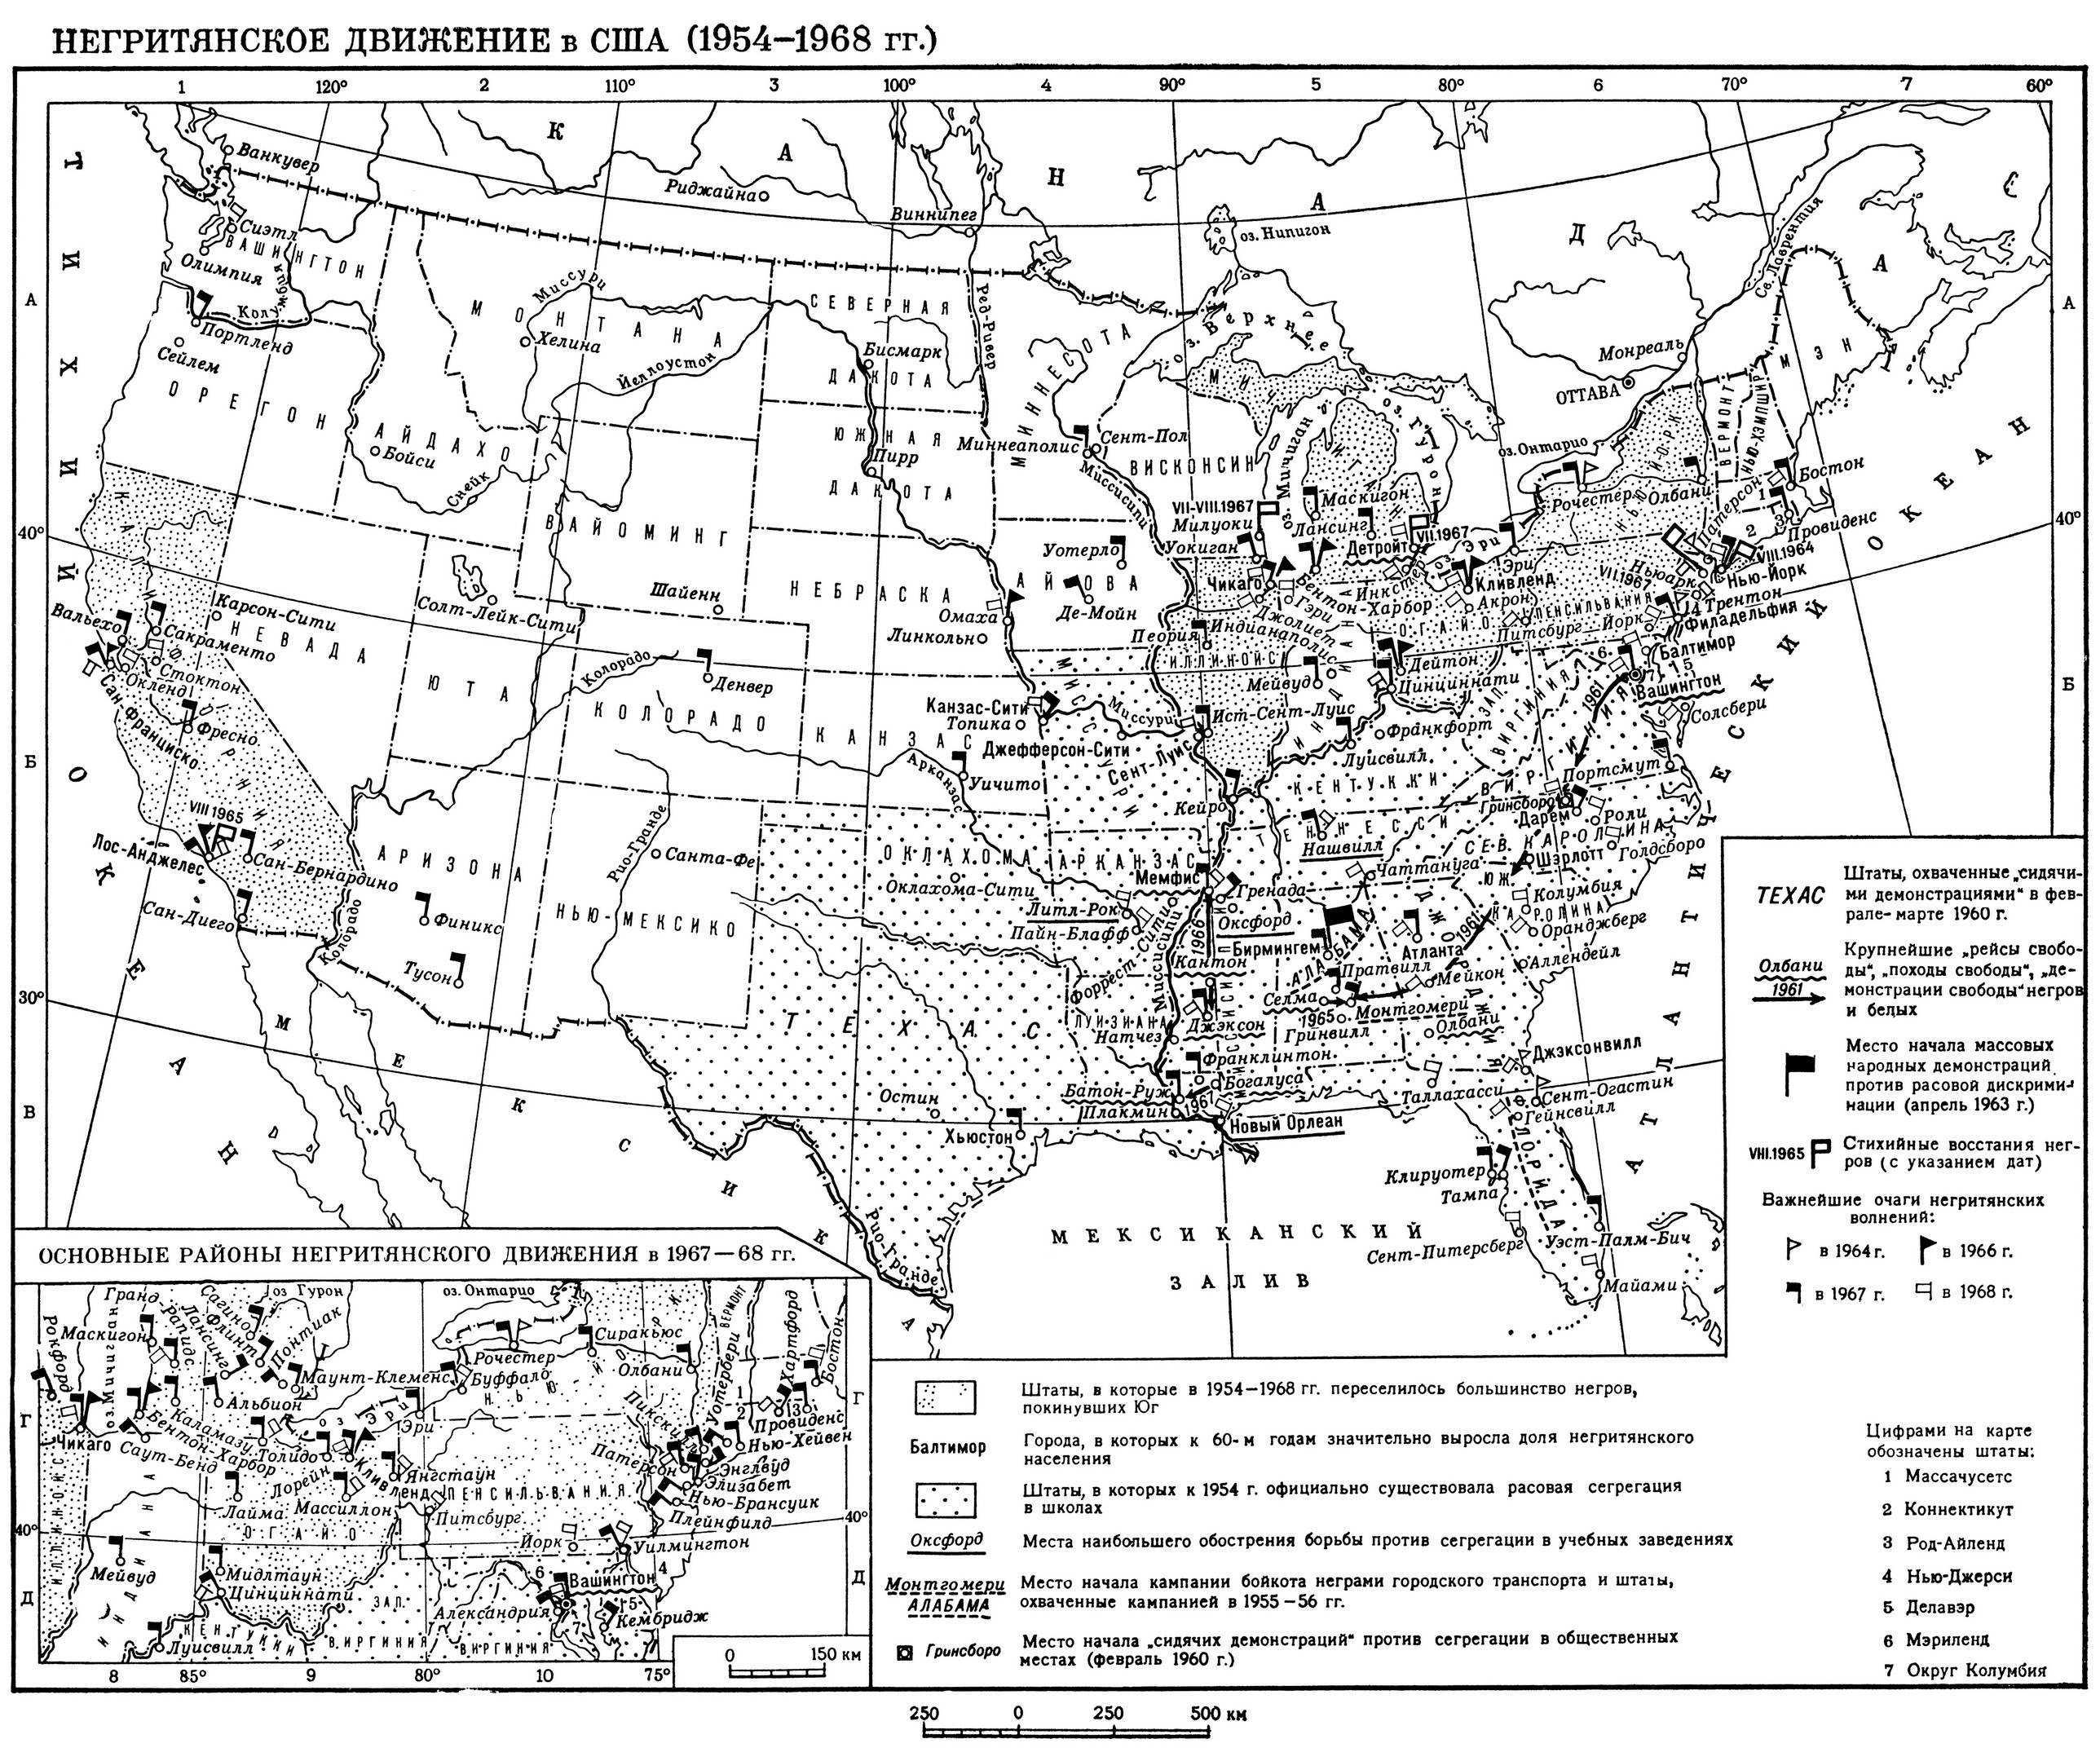 Соединенные штаты америки в конце 19 века контурная карта